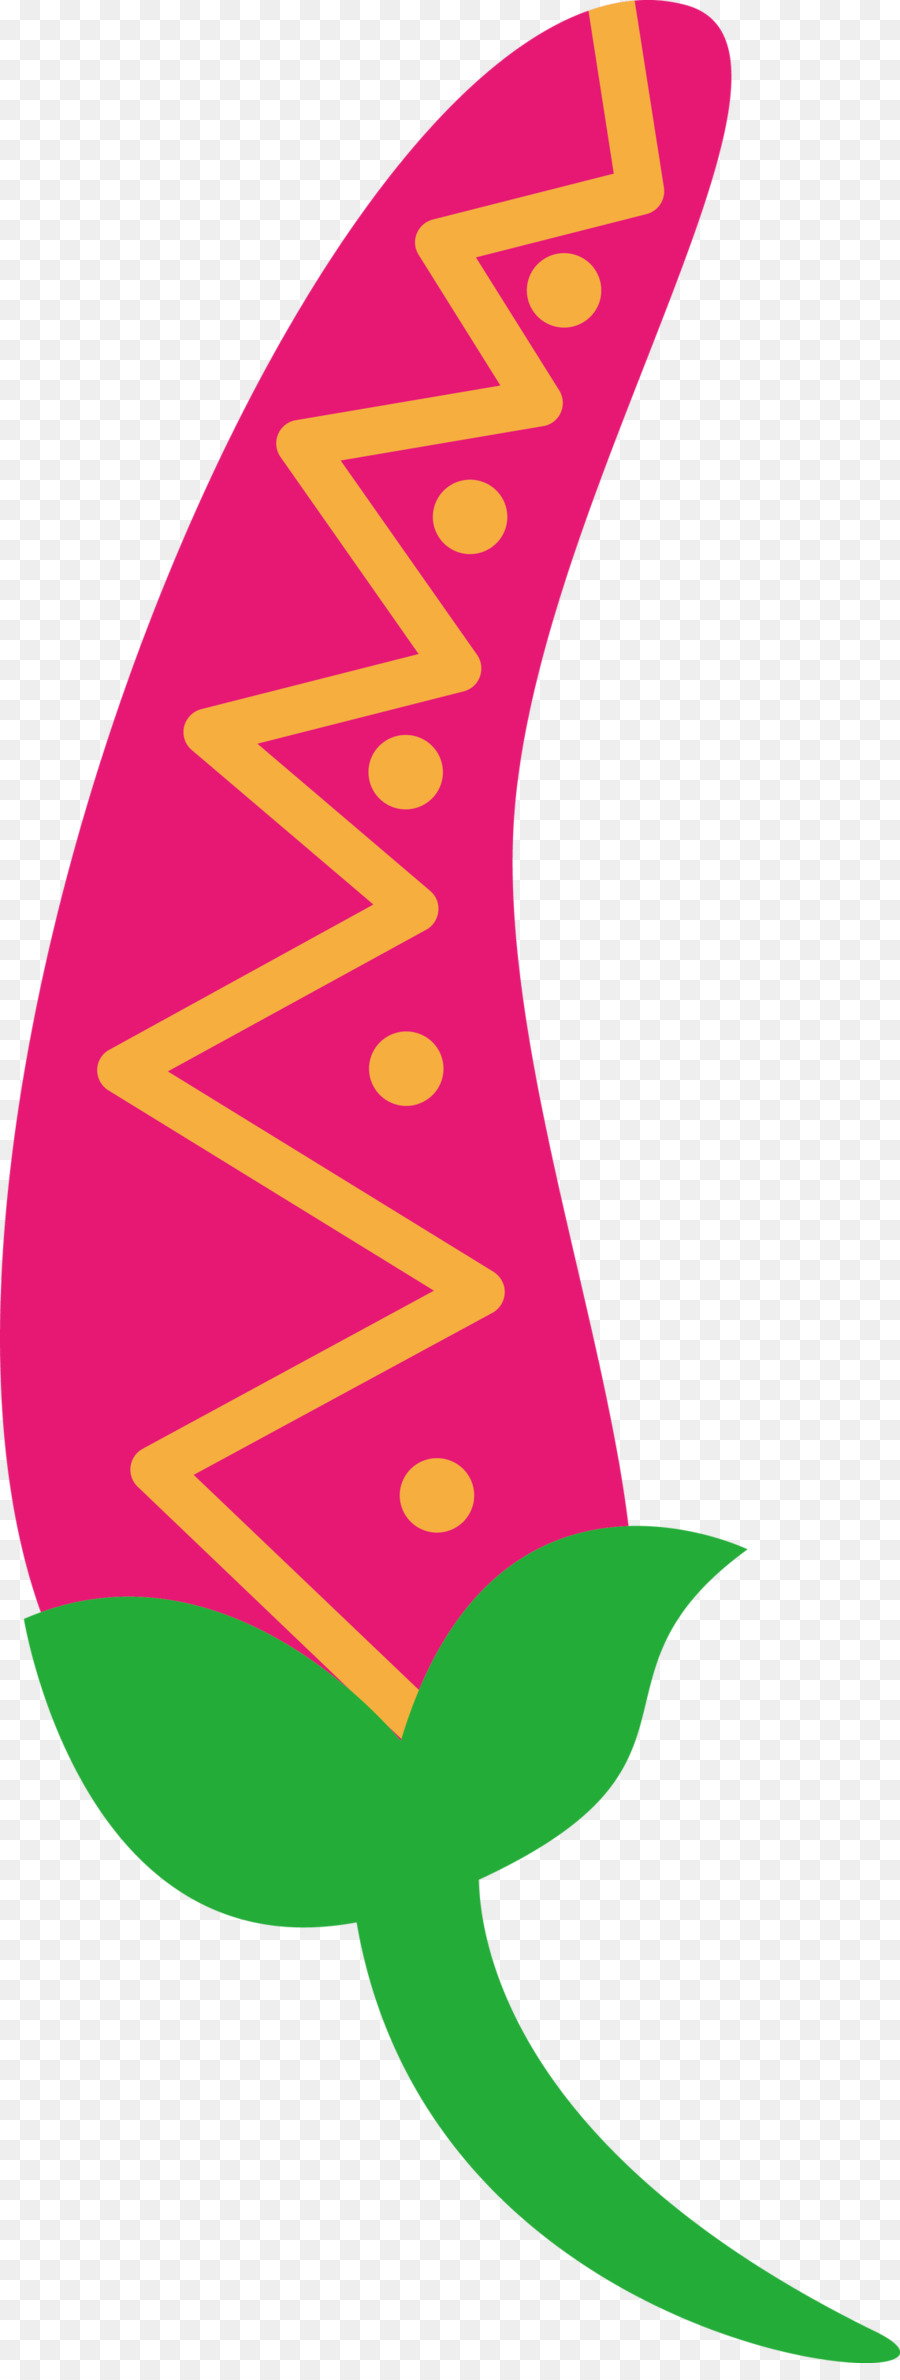 Logo Blatt Symbol grünes Blütenblatt - 